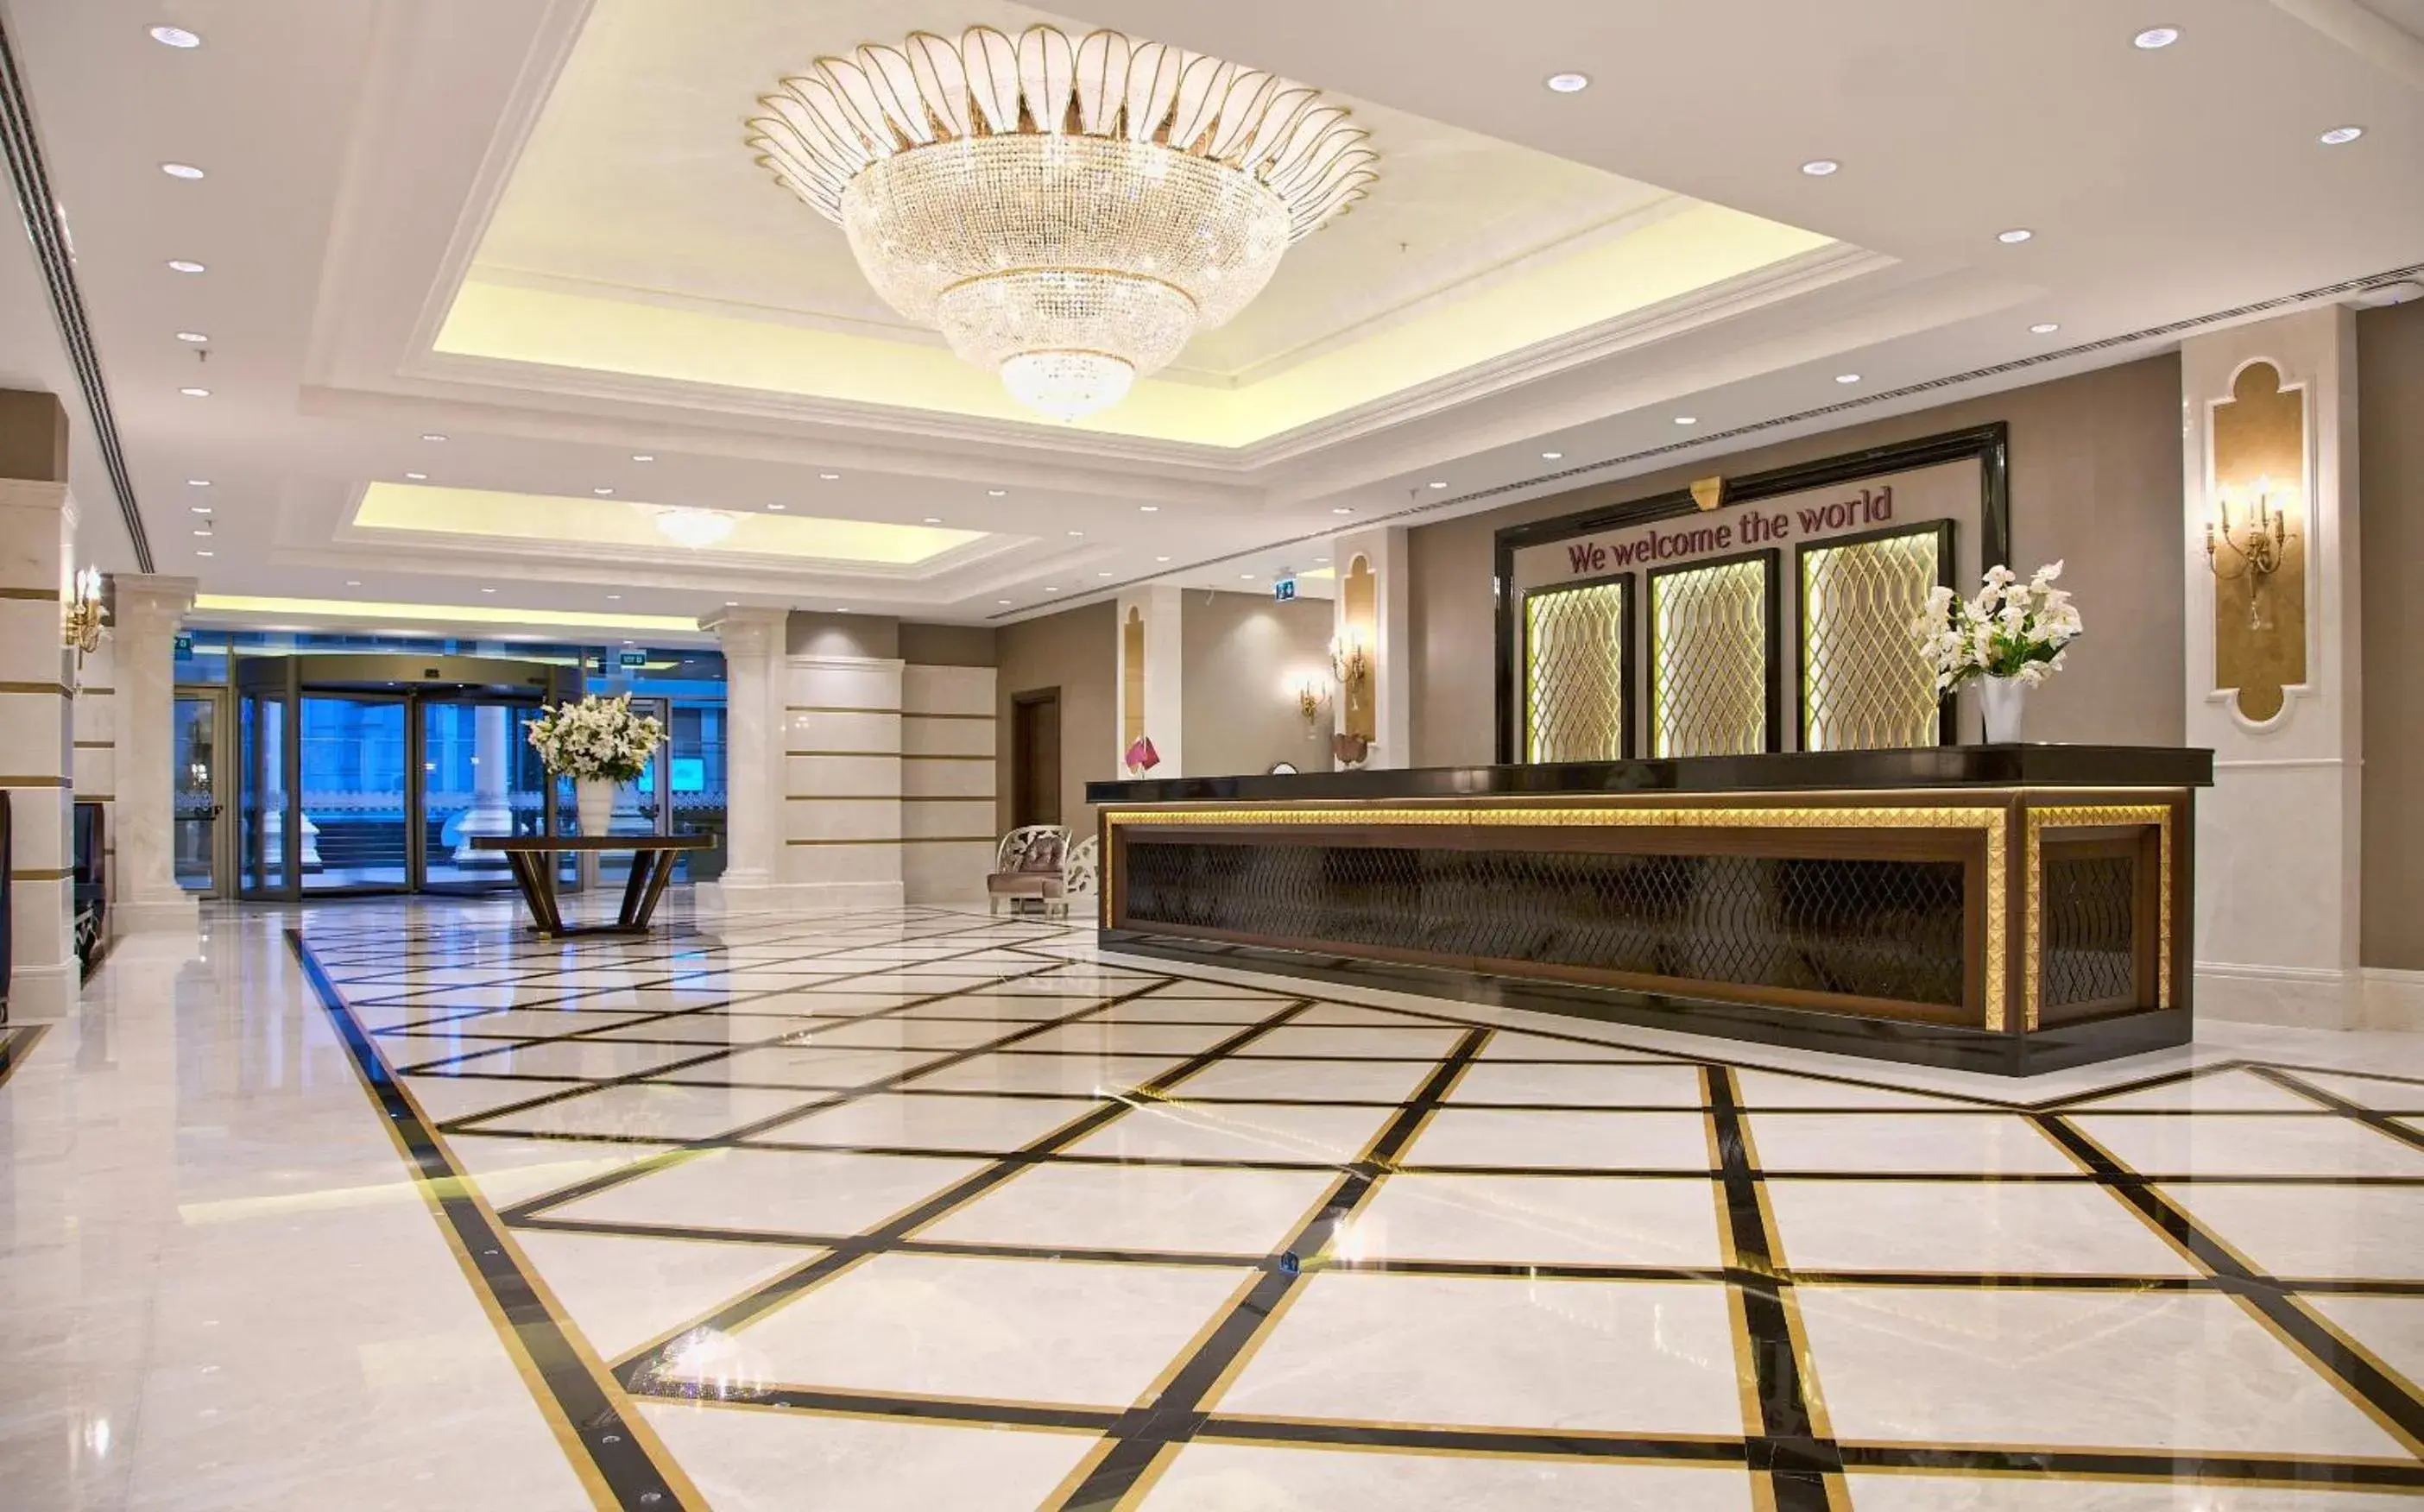 Lobby or reception, Lobby/Reception in Retaj Royale Istanbul